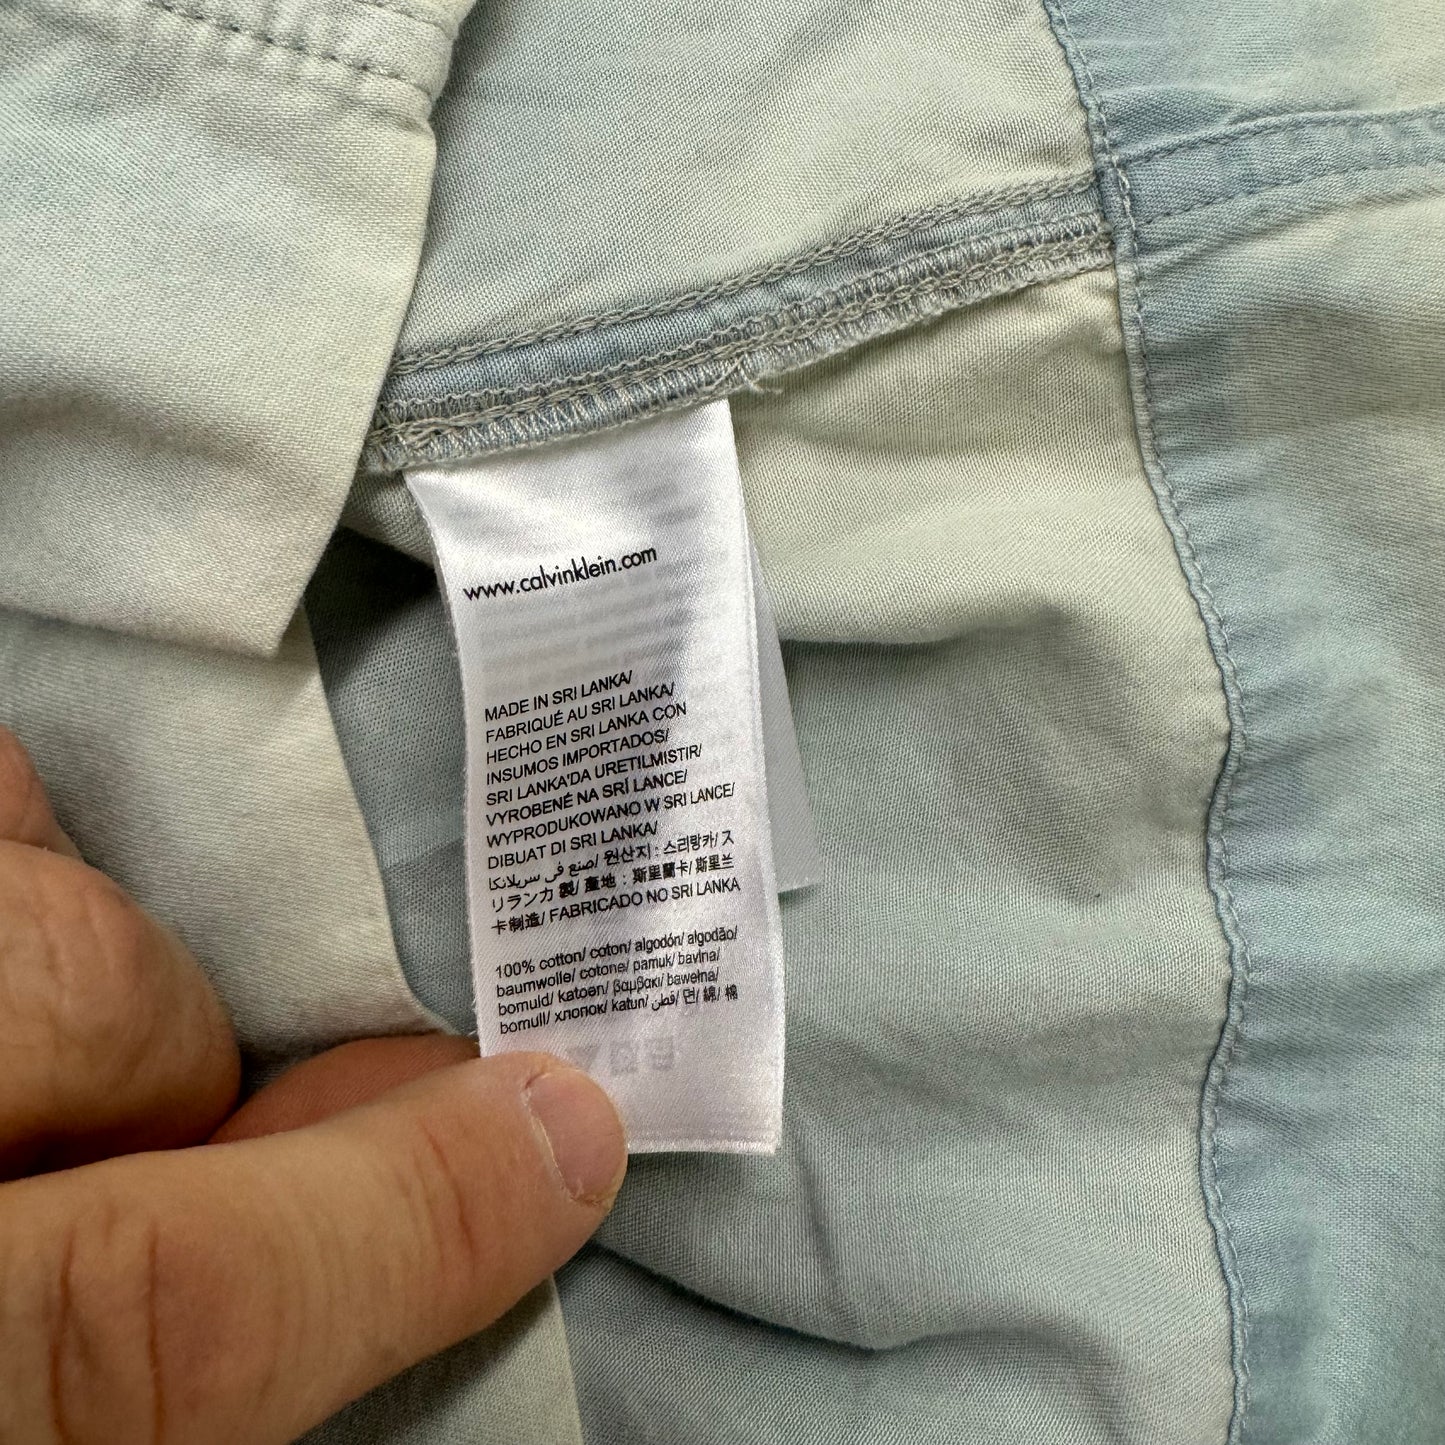 Calvin Klein Jeans | Womens Light Wash Denim Mini-Dress | Color: Blue | Size: XL | Pre-Owned